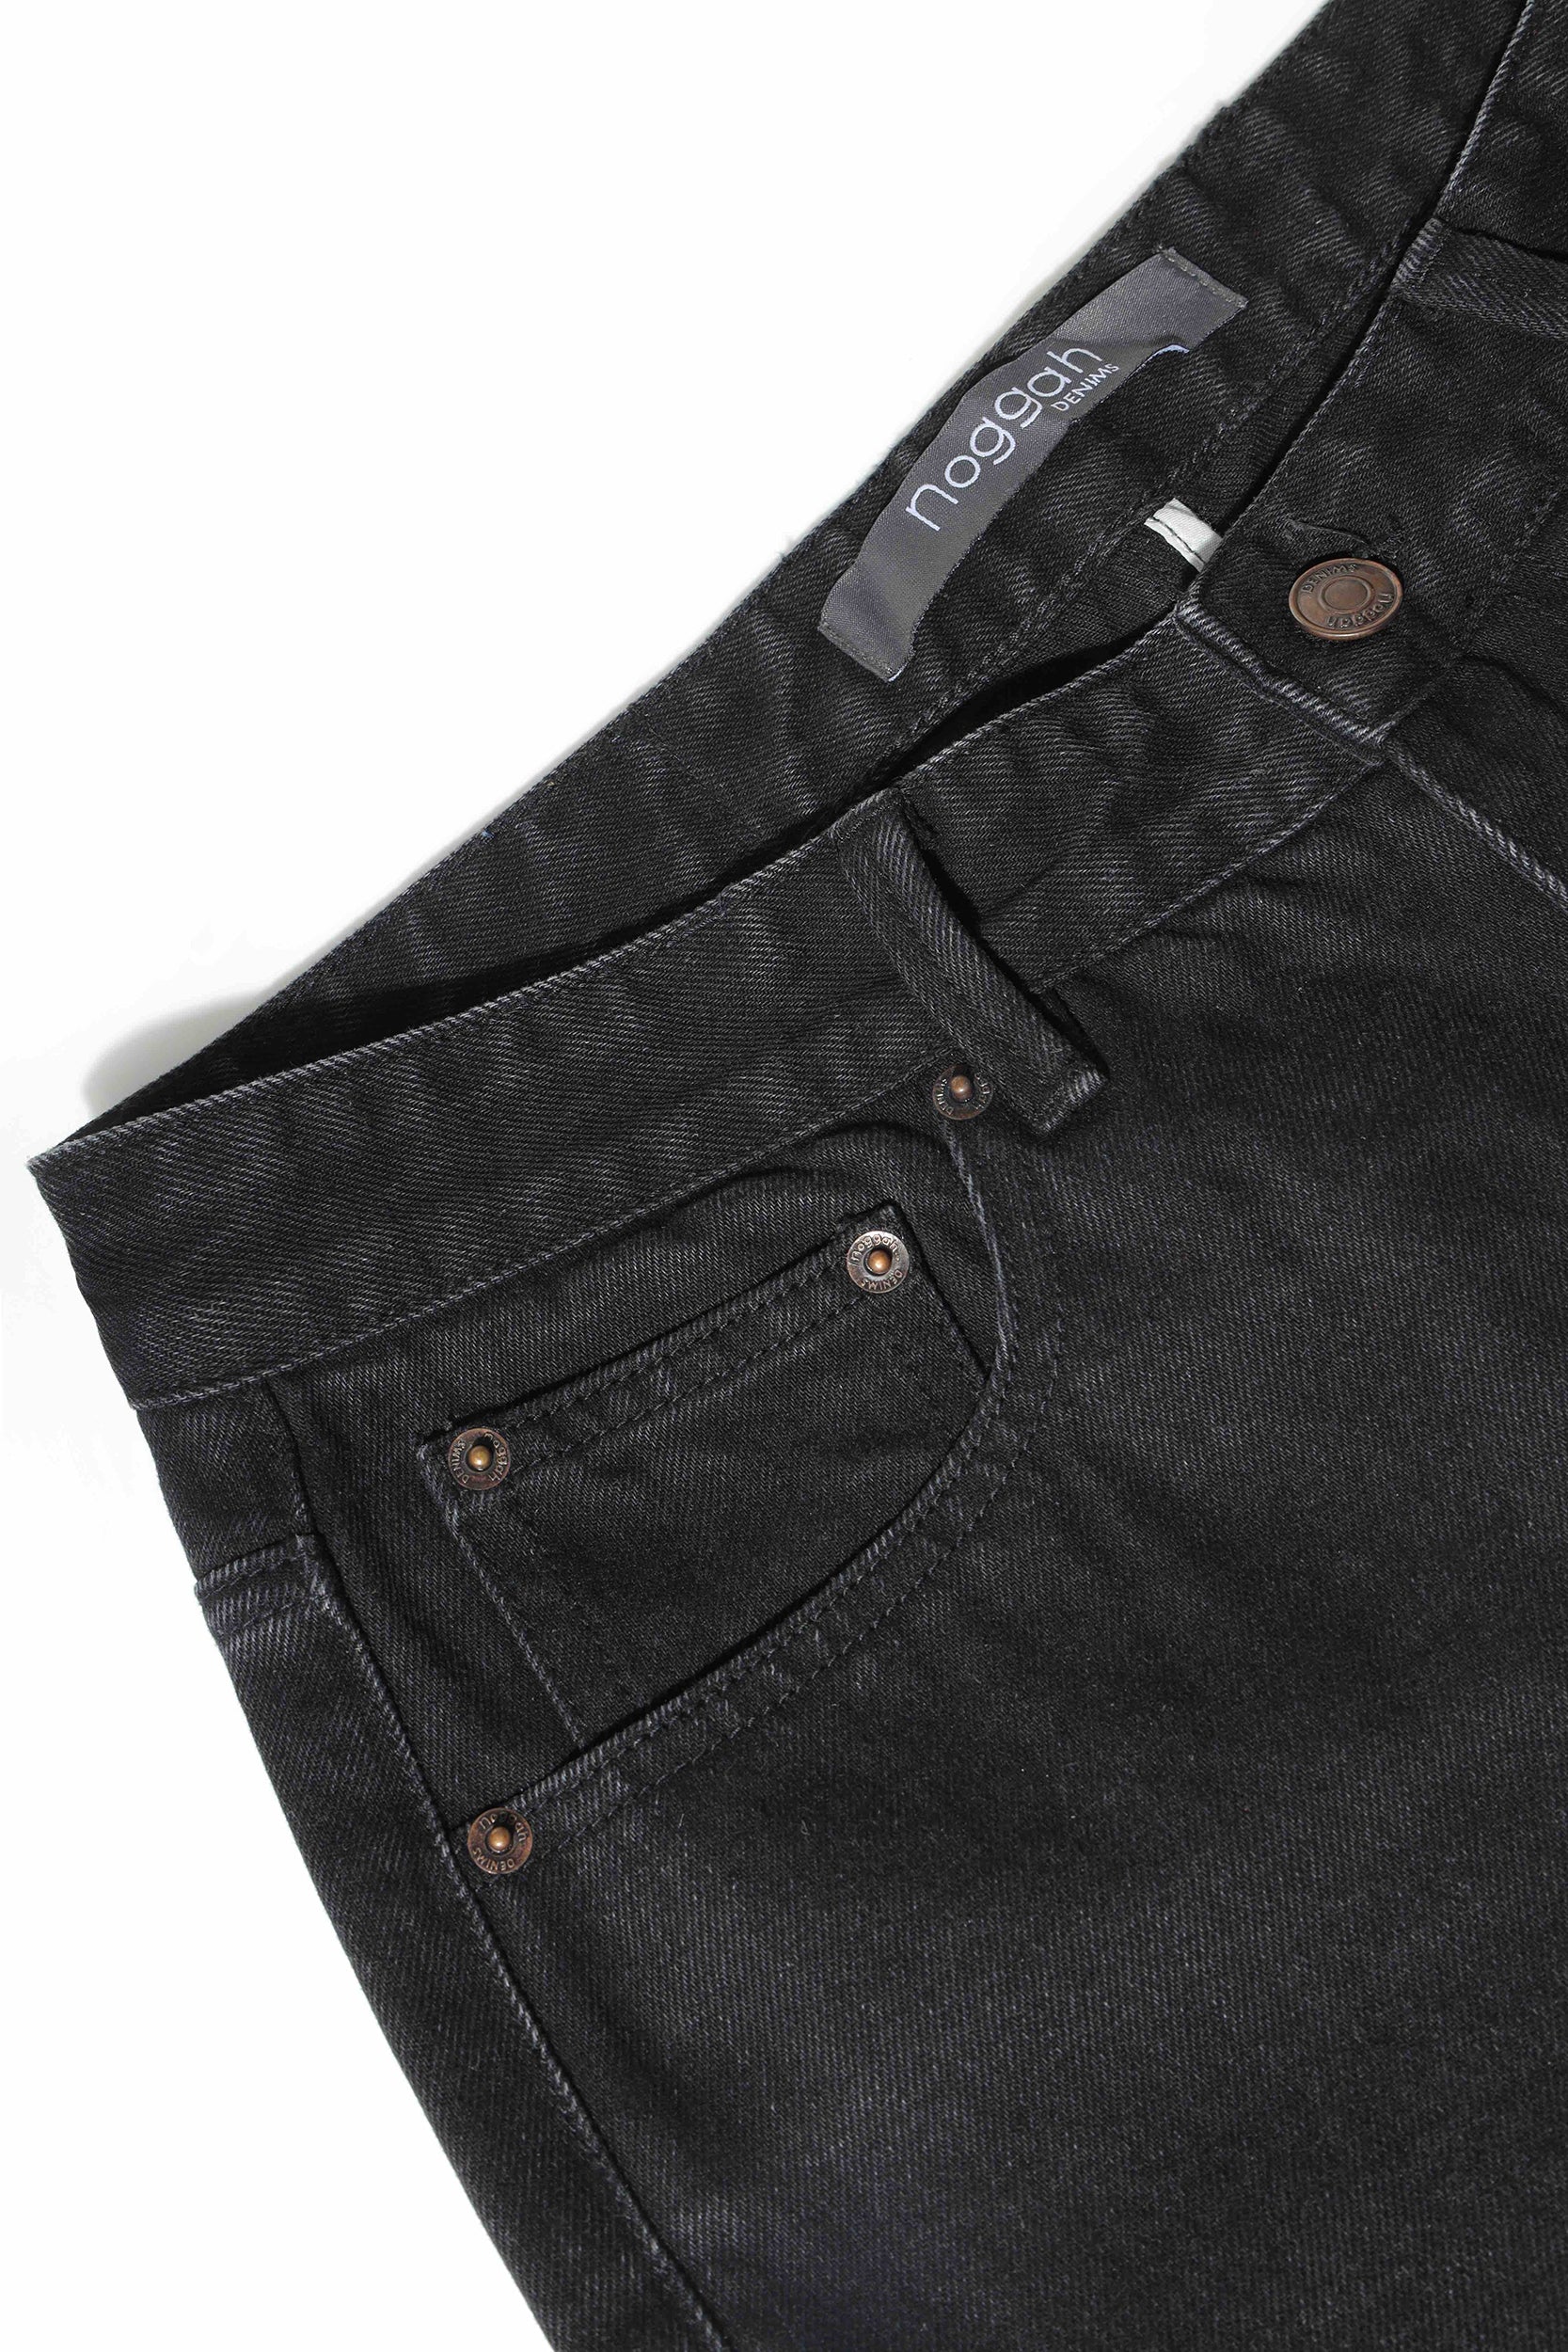 LEVIS Regular Men Beige Jeans  Buy LEVIS Regular Men Beige Jeans Online  at Best Prices in India  Flipkartcom